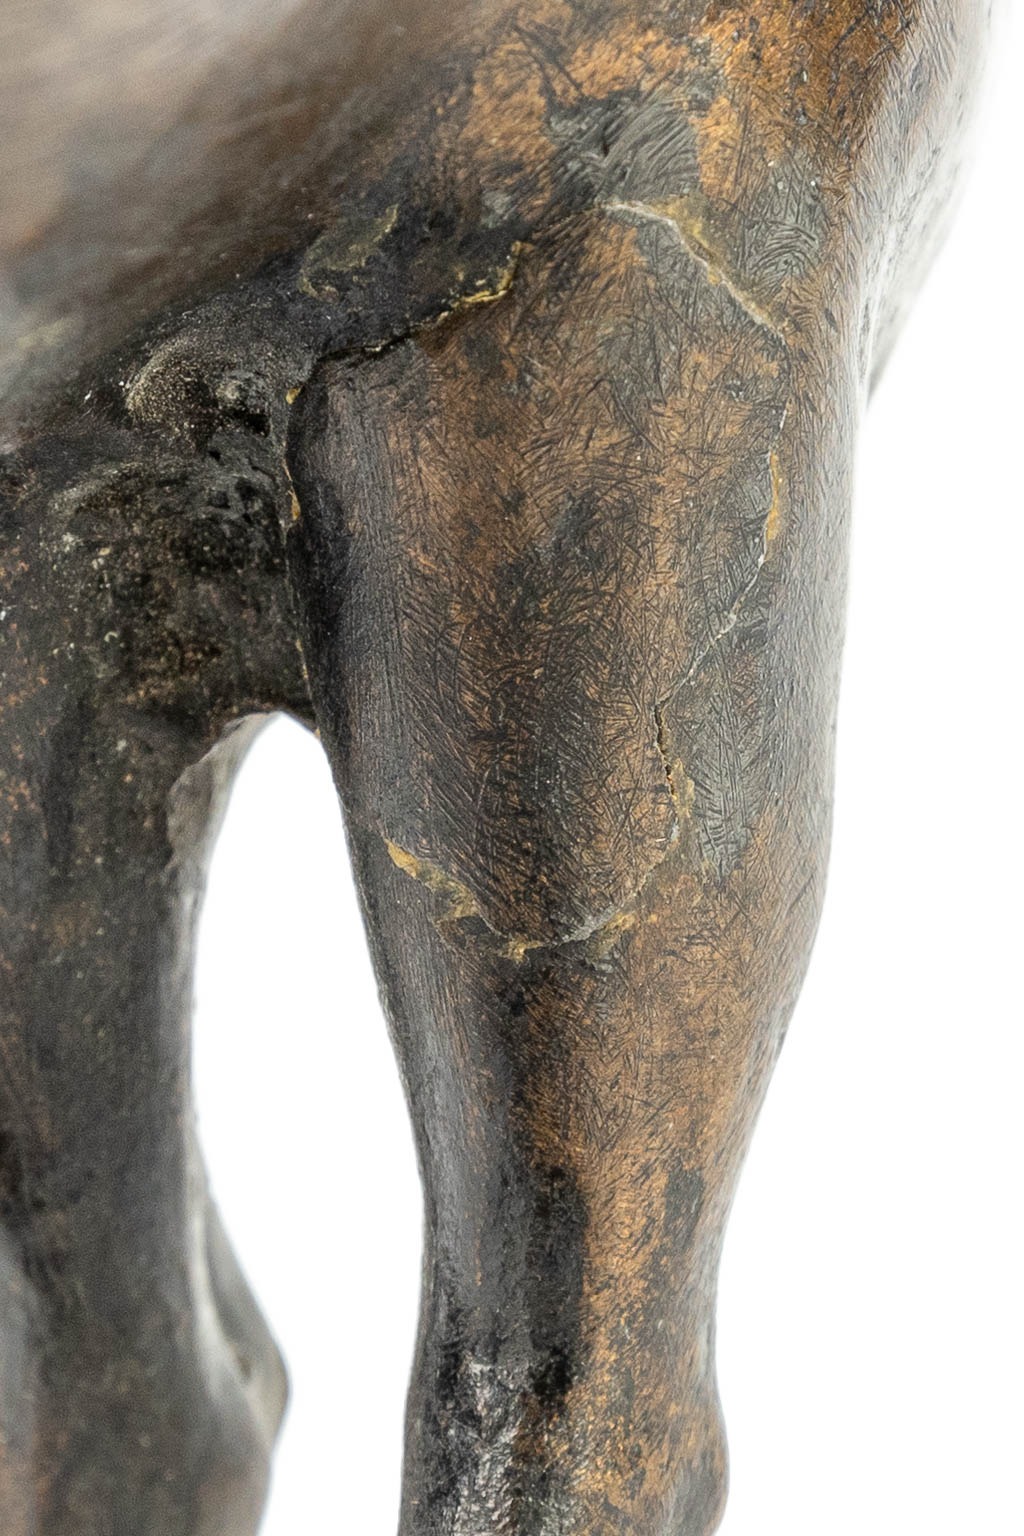 Geen handtekening gevonden. Een bronzen beeld van een hert. (H:22cm)